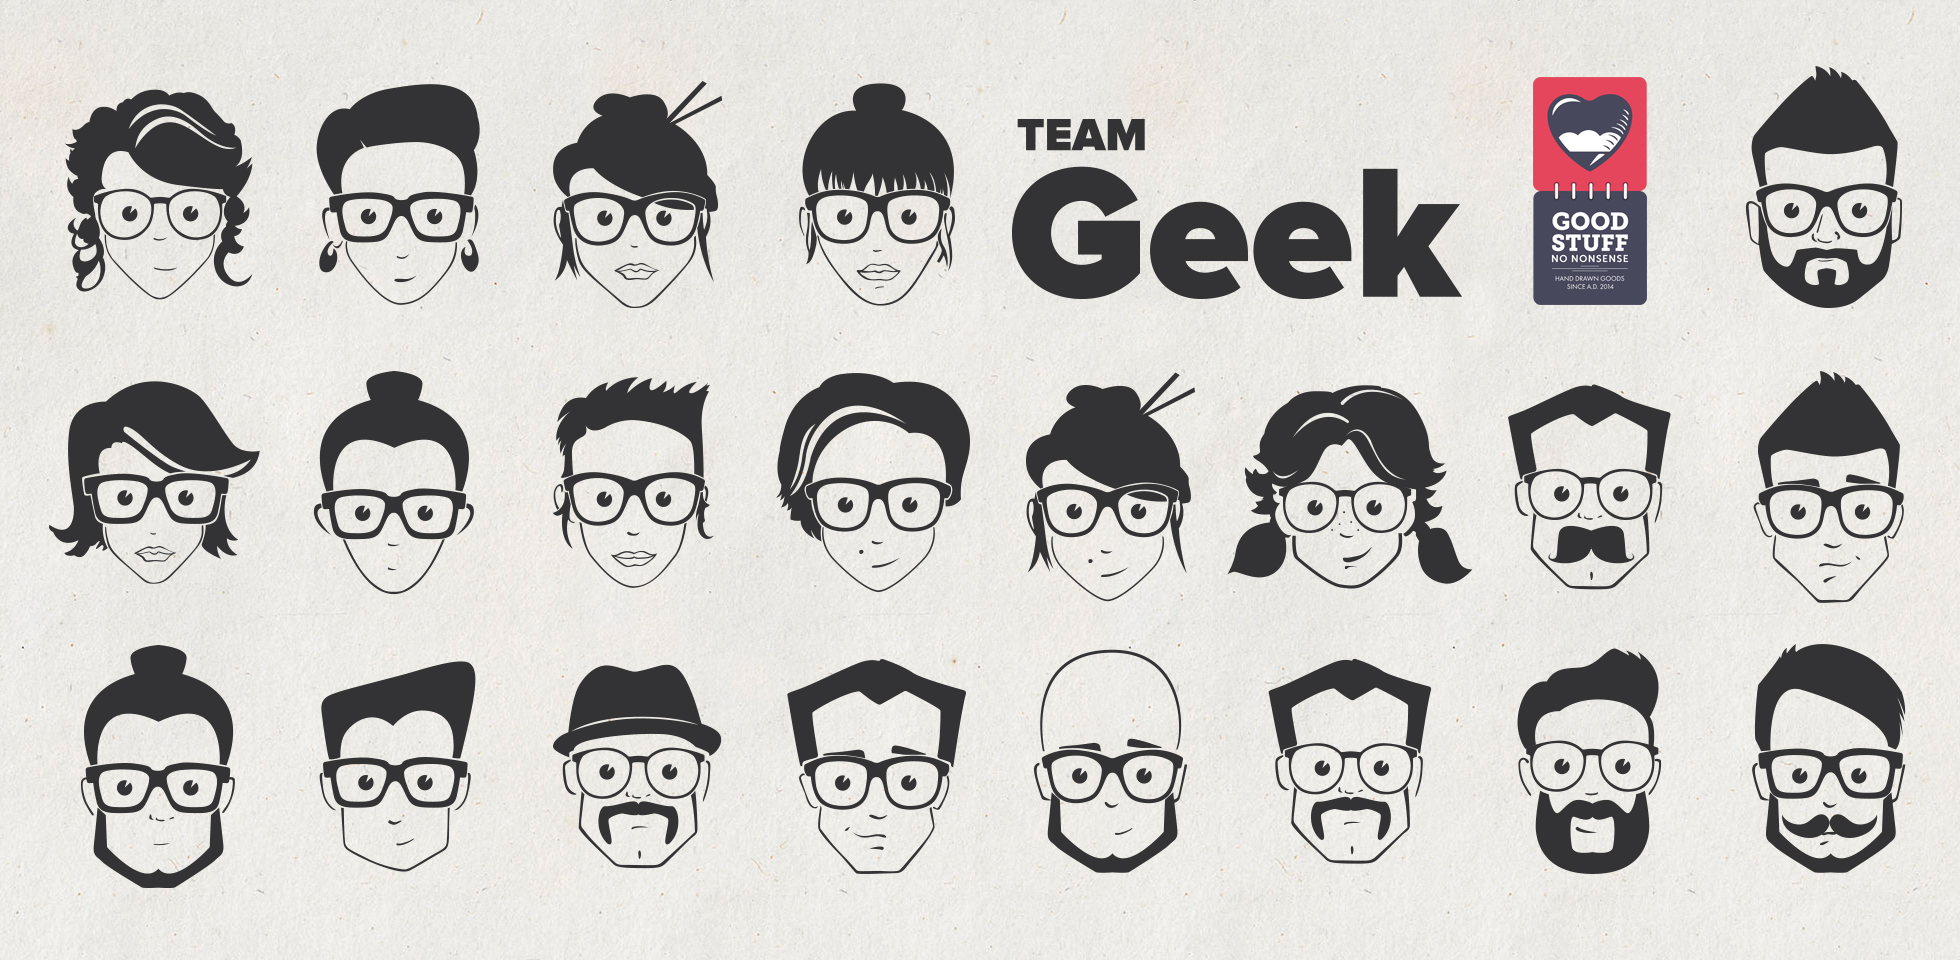 Free Download: Team Geek Pack